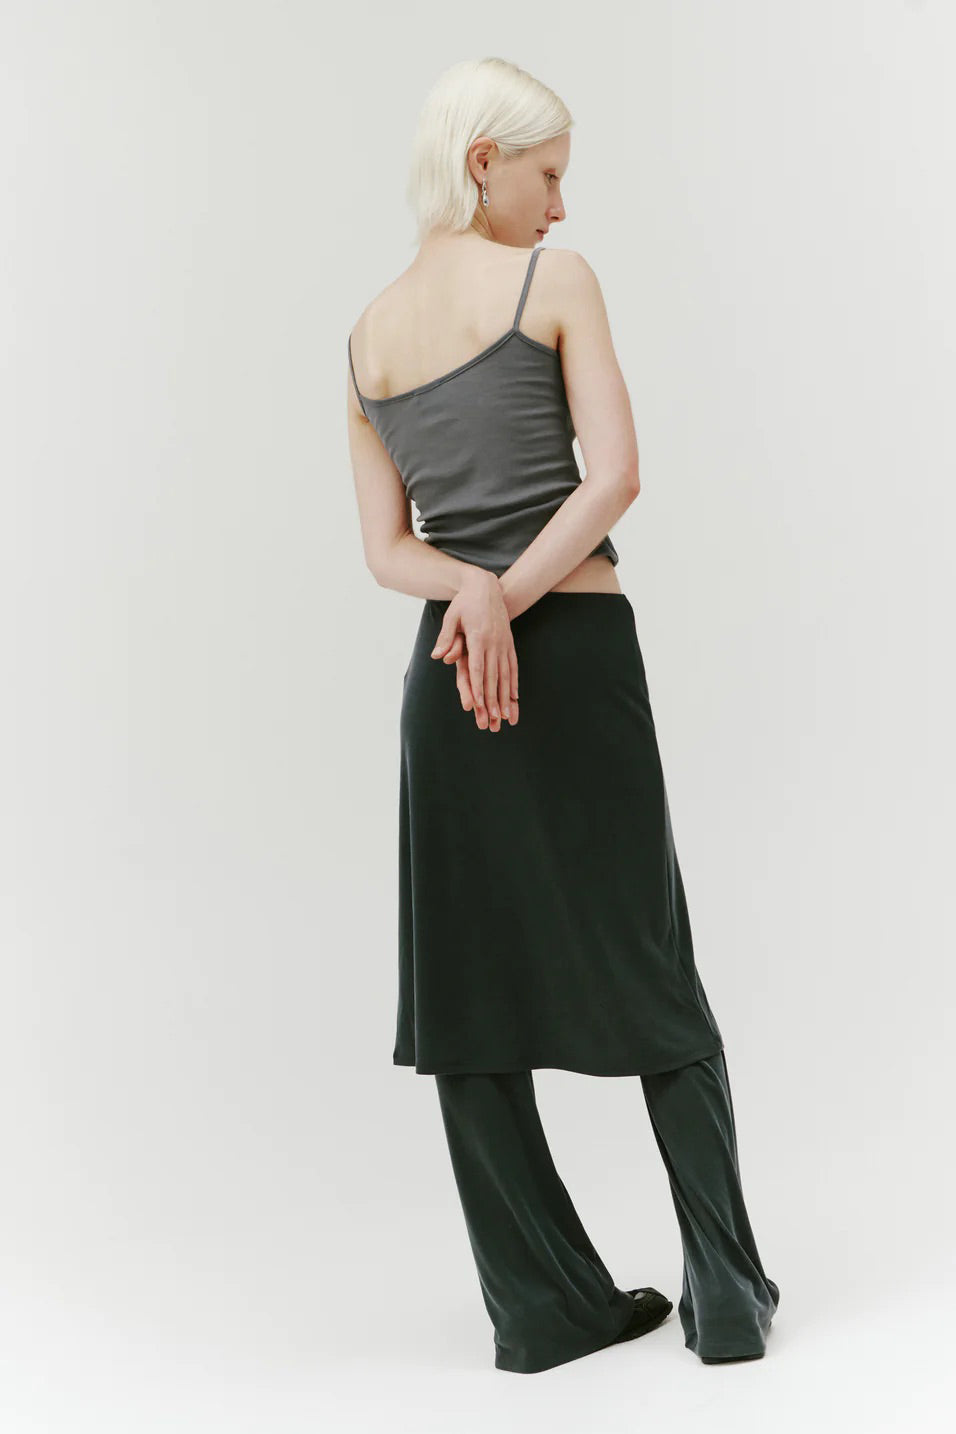 PV Composure Skirt // Slate